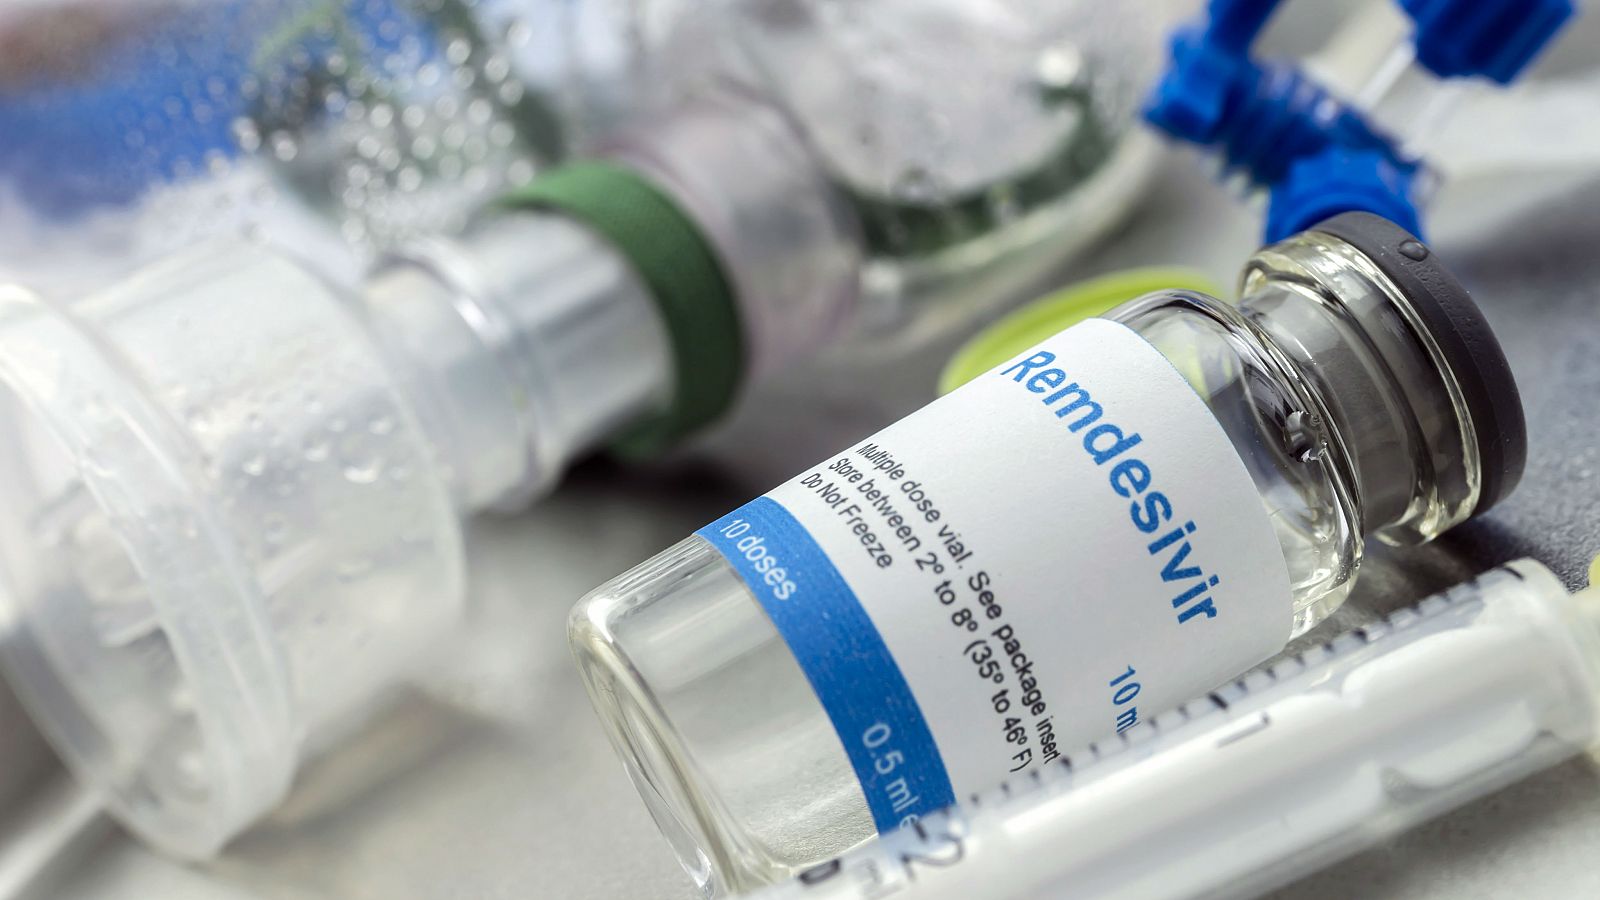 Sanidad señala que el remdesivir tiene "buenos resultados" contra el coronavirus - RTVE.es